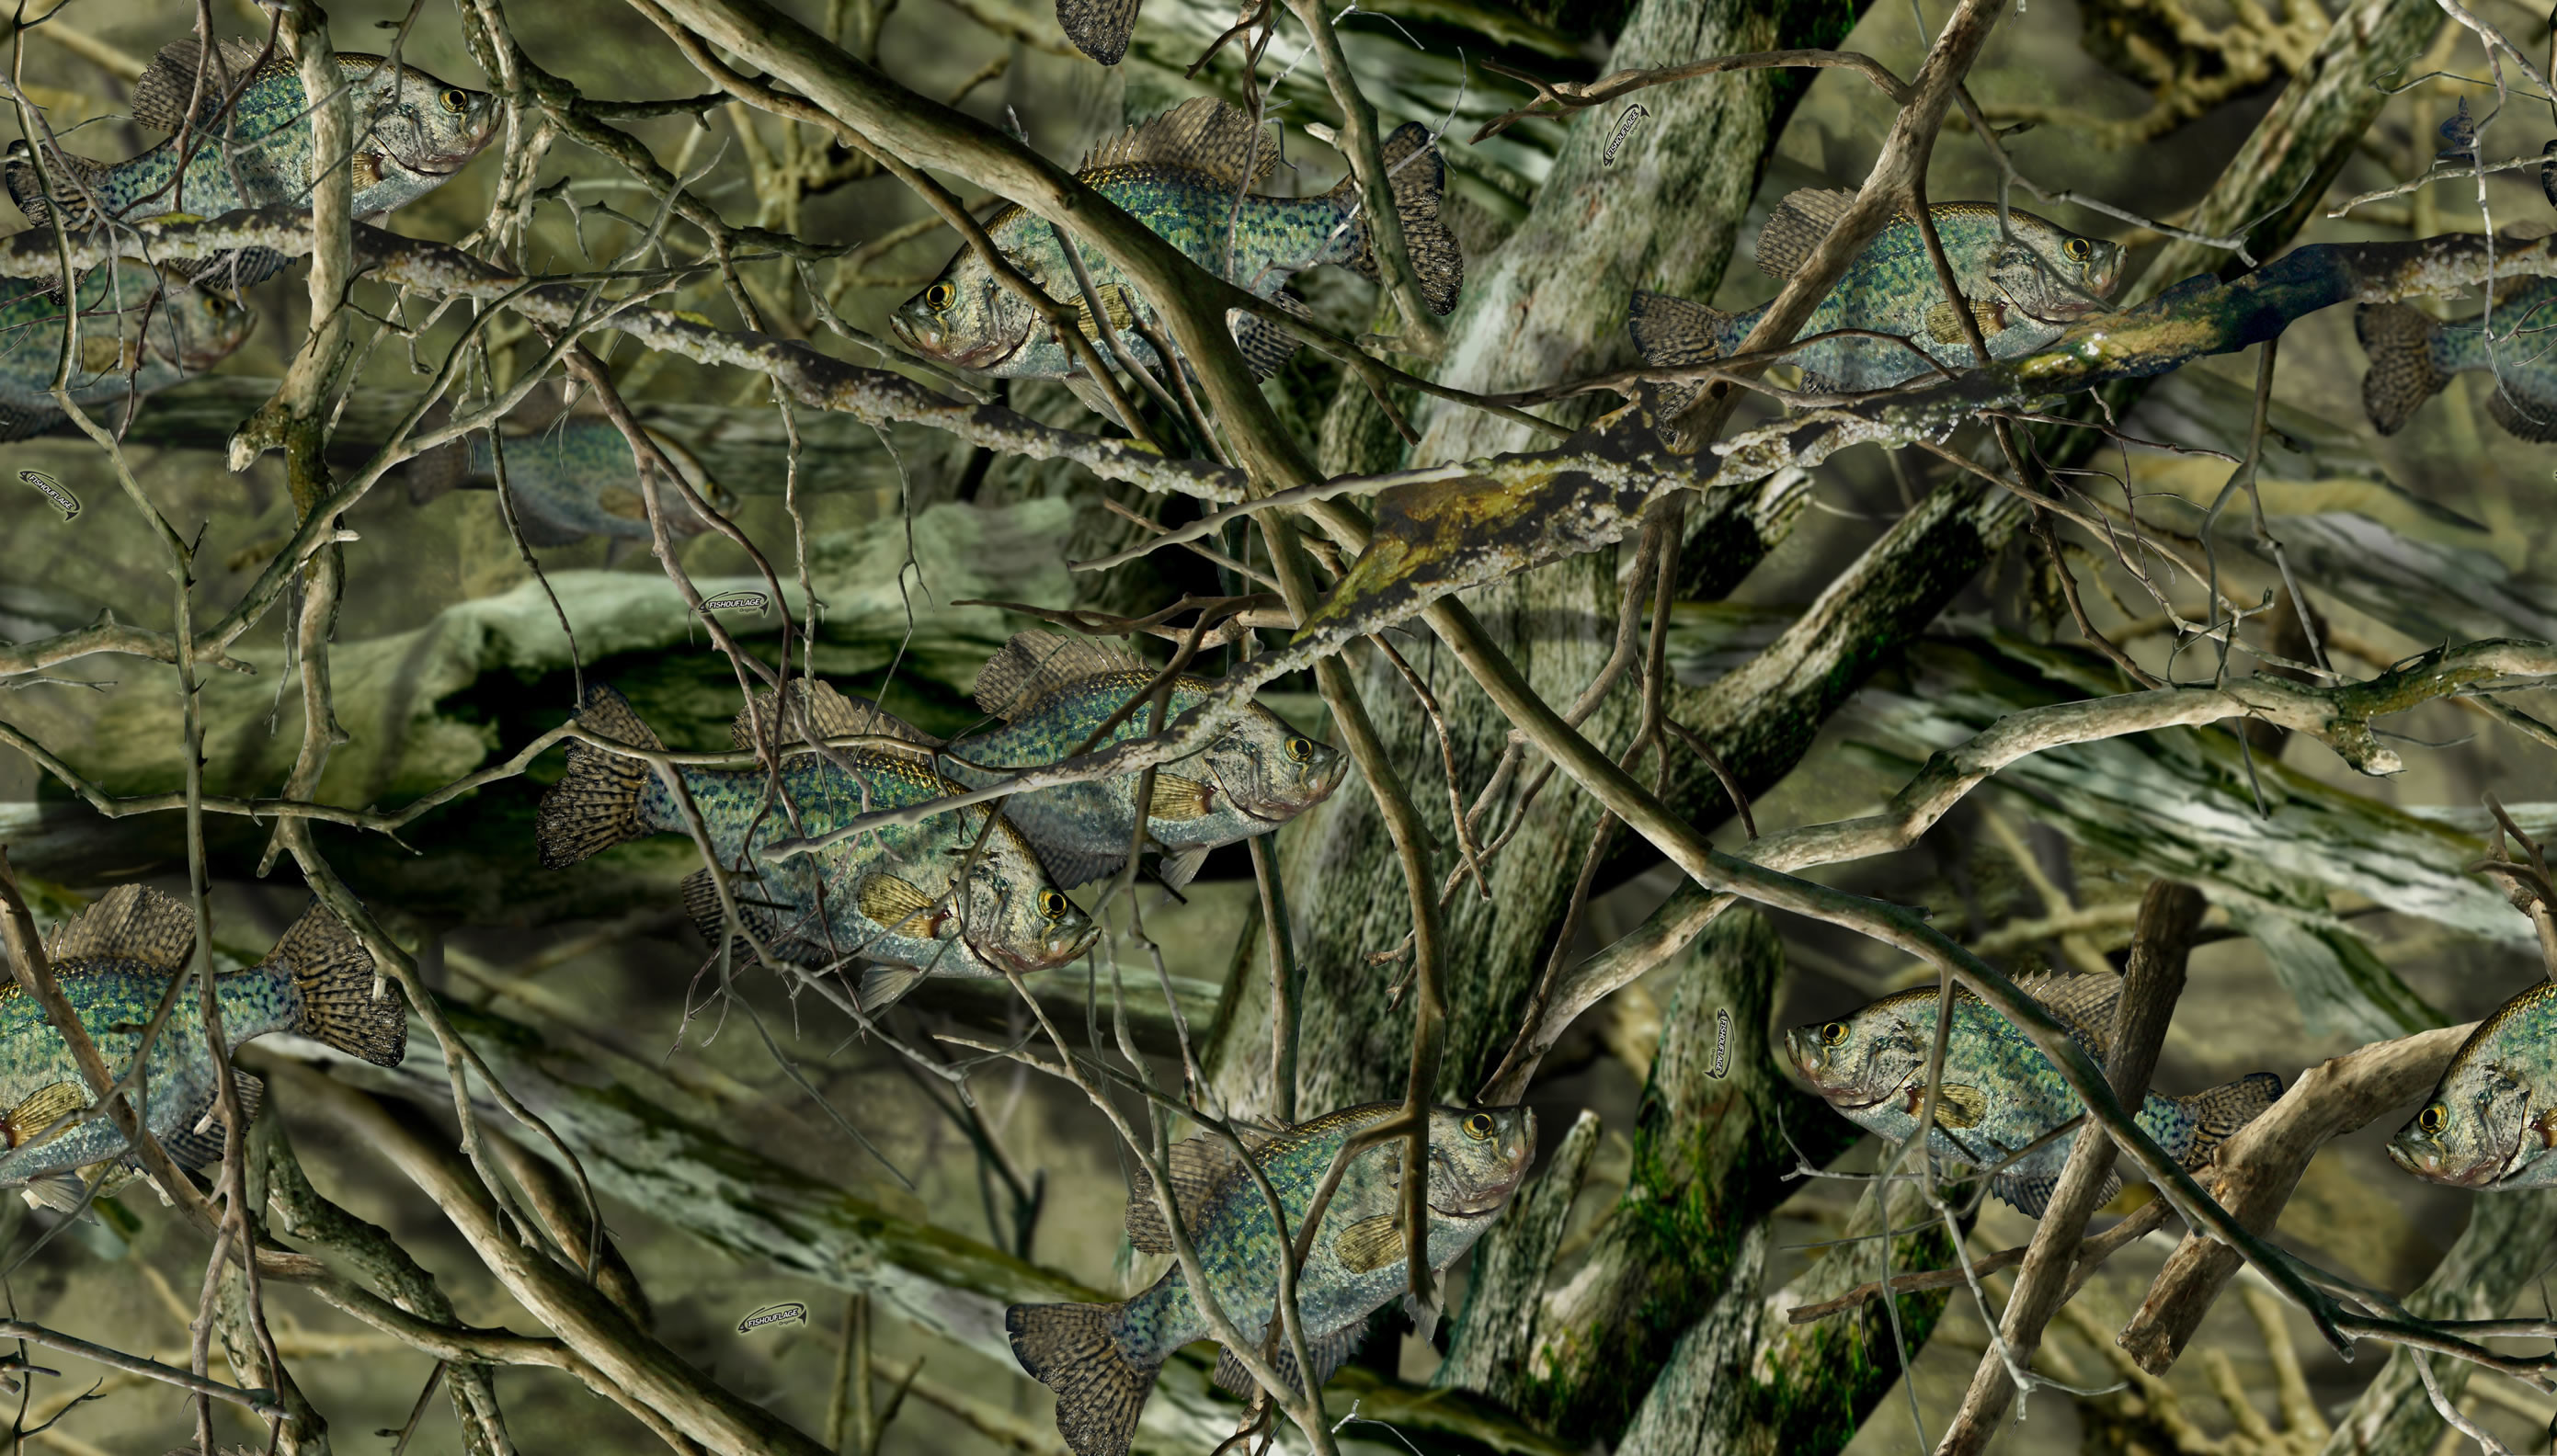 Ярко болотный. Ткань Оксфорд, камуфляжная ткань Realtree Max-5. Камуфляж Realtree Max 1. Камуфляж Камо дерево. Болотная Камо.